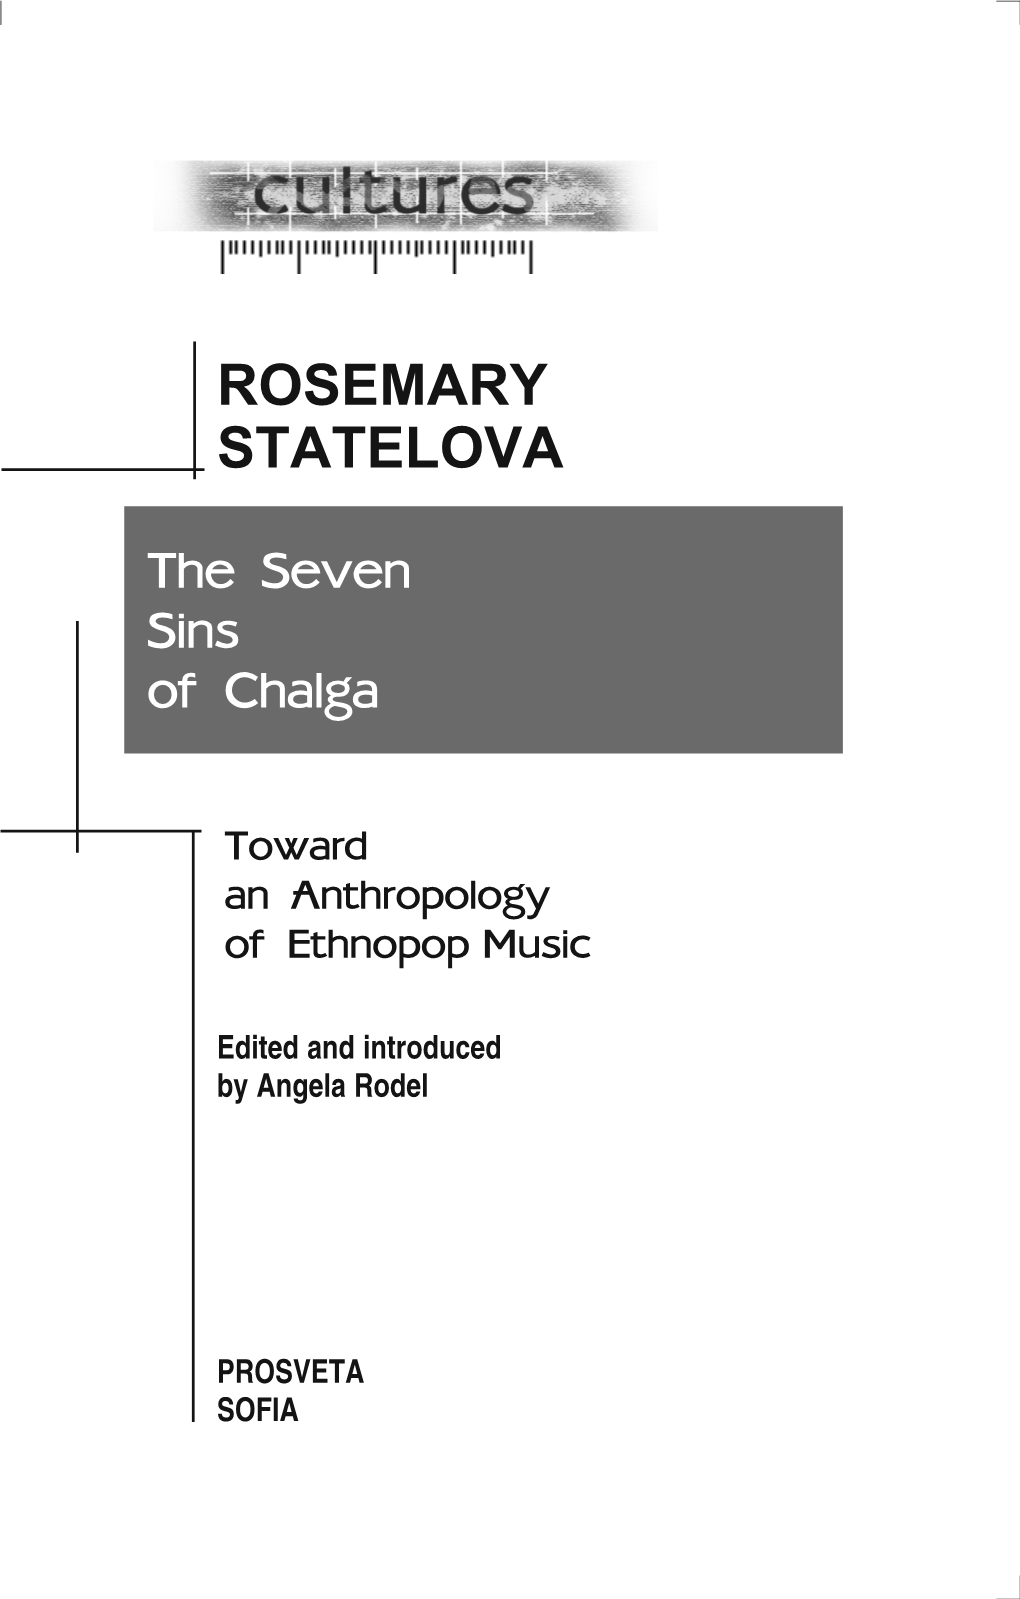 ROSEMARY STATELOVA the Seven Sins of Chalga